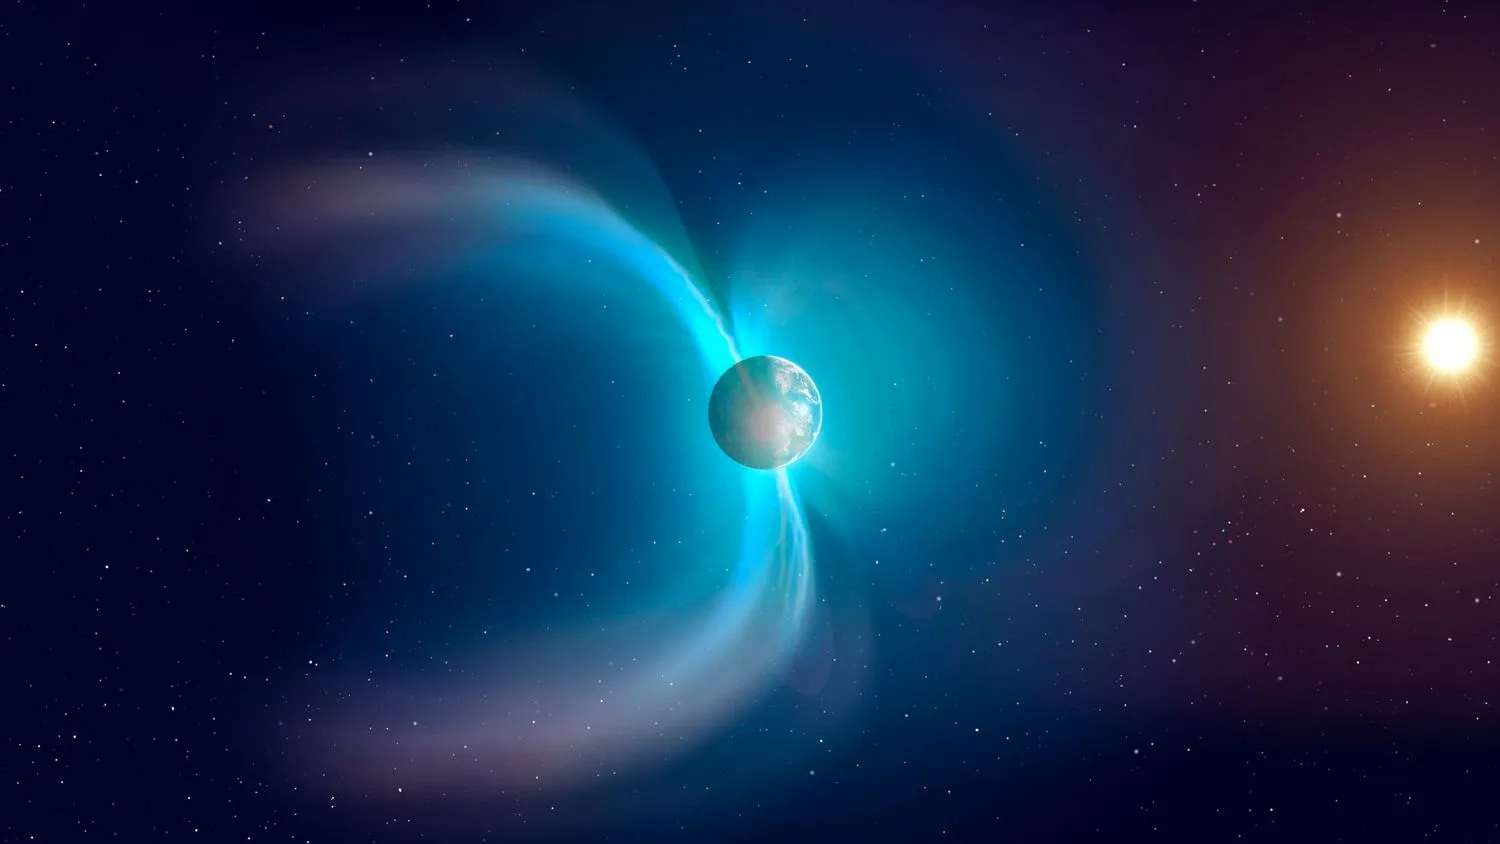 Erde im Weltraum mit zwei blauen Feldern, die das Magnetfeld des Planeten anzeigen